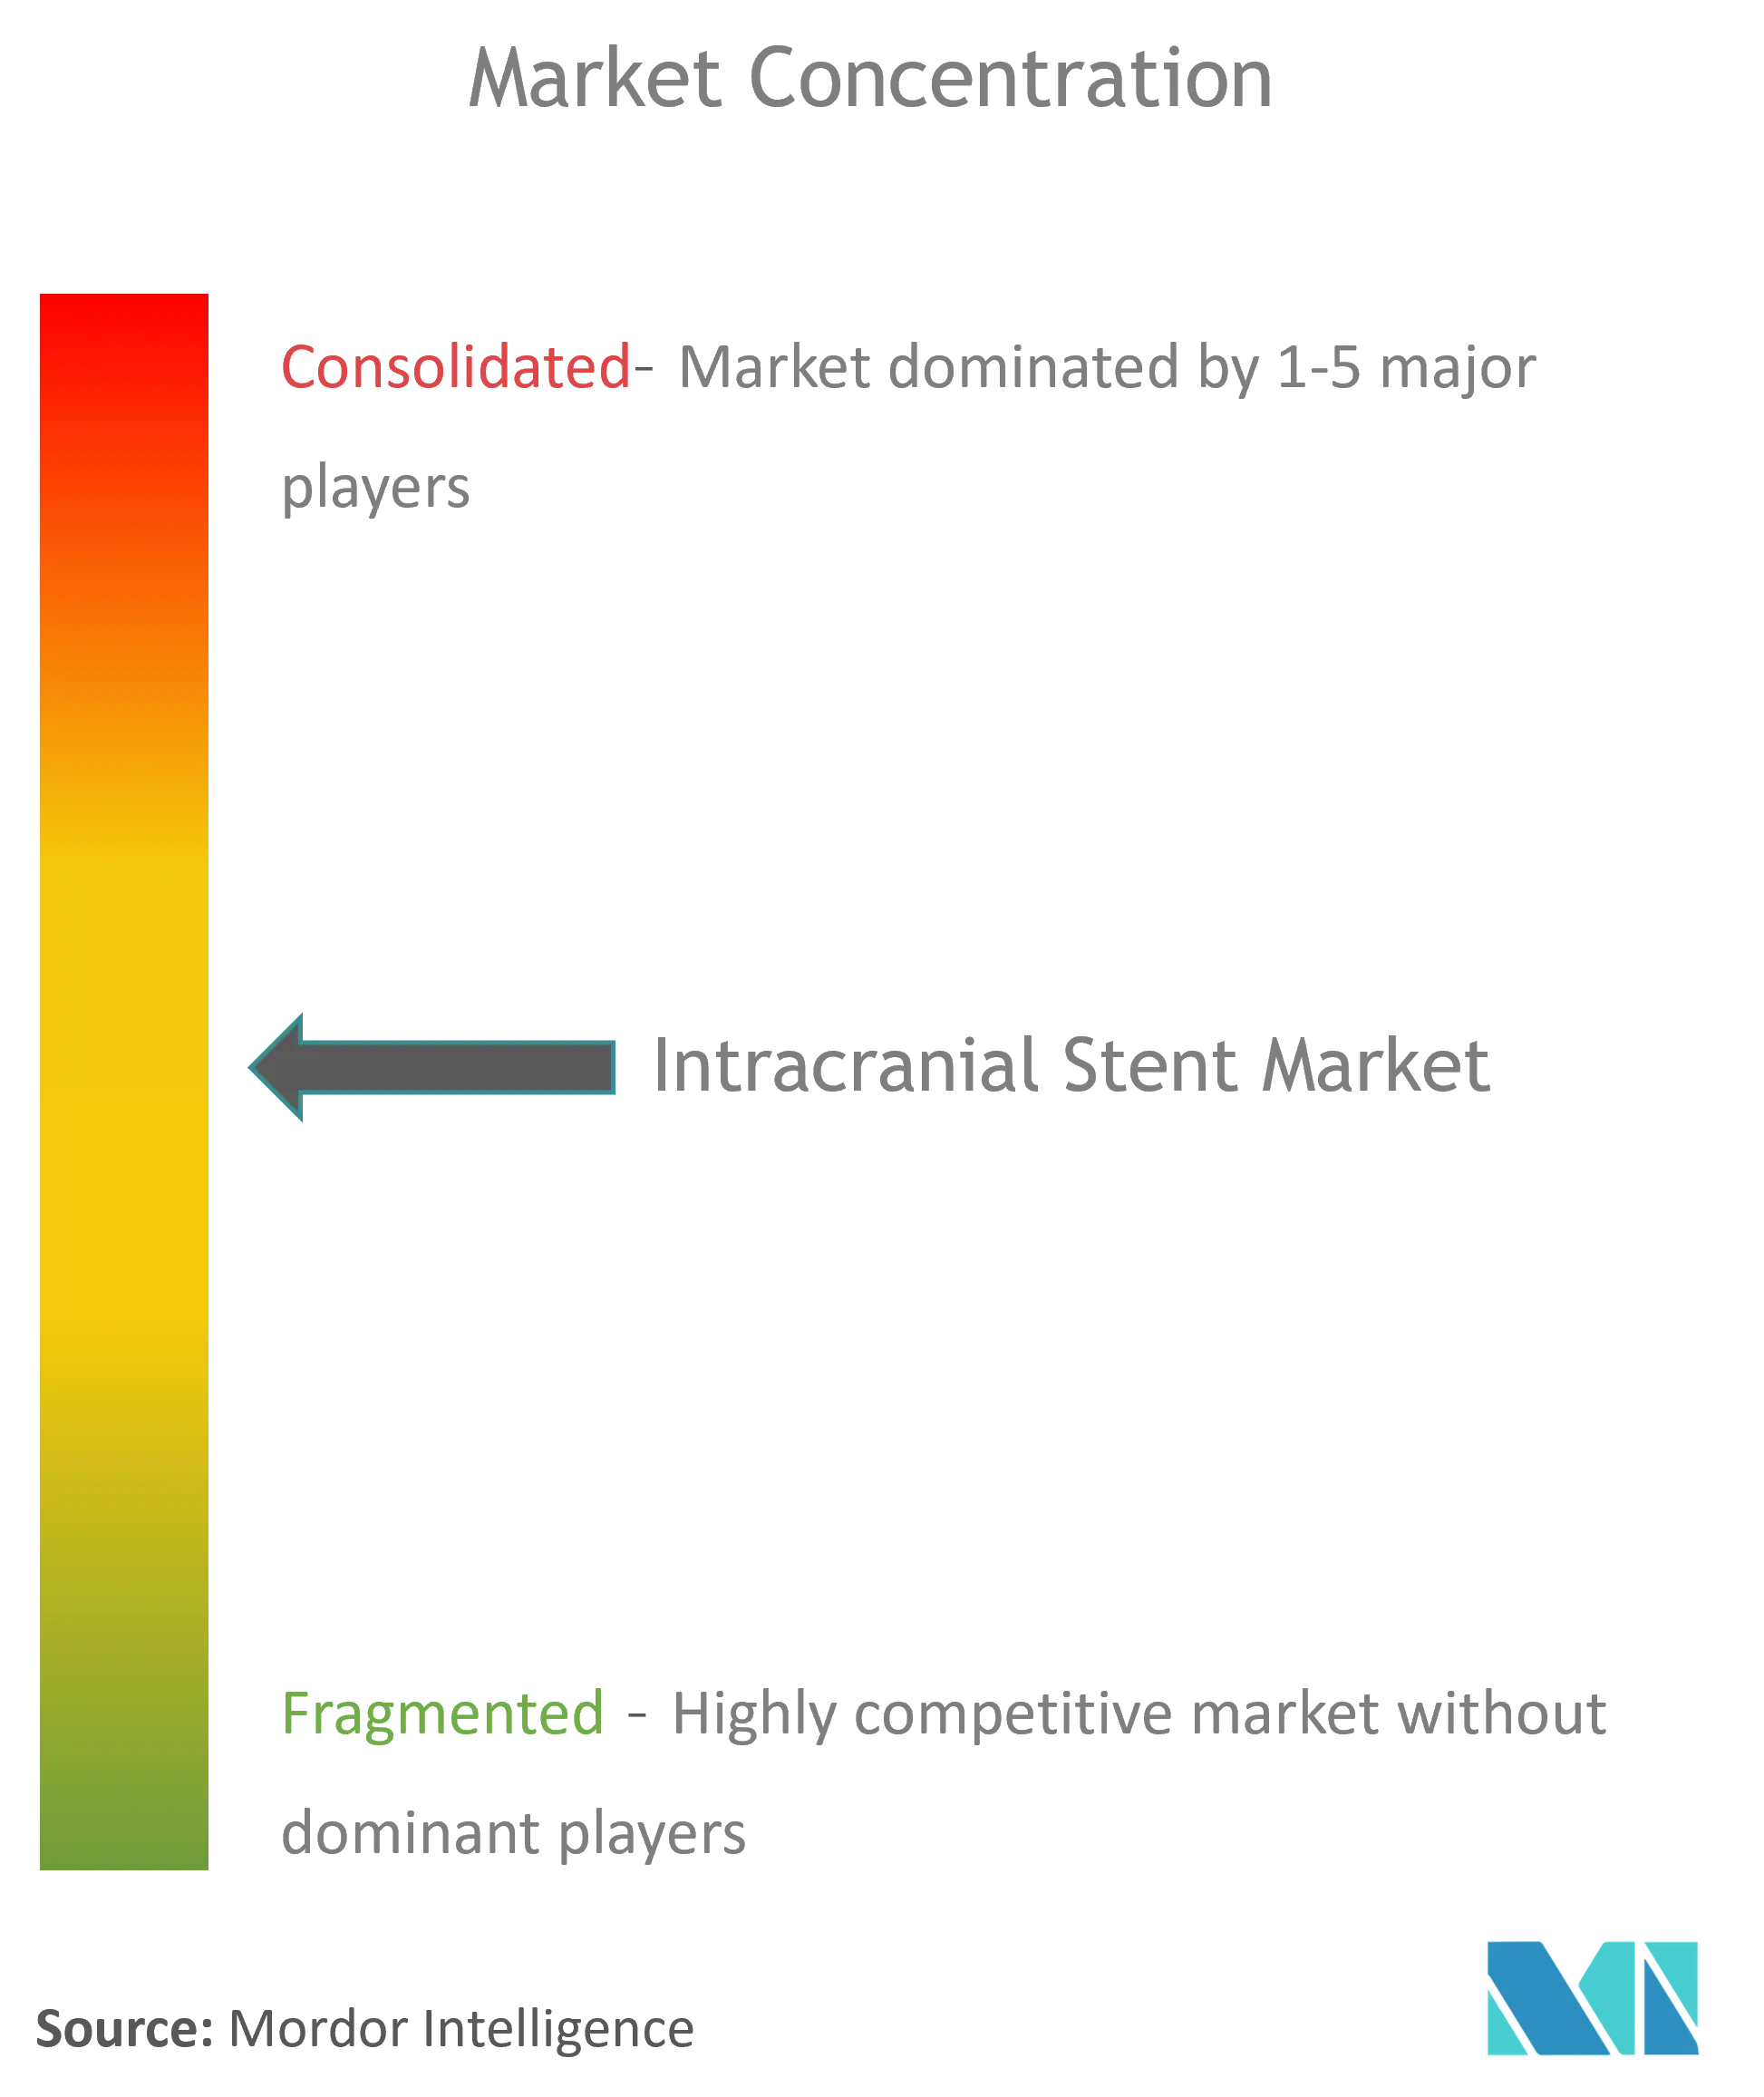 Marktkonzentration für intrakranielle Stents